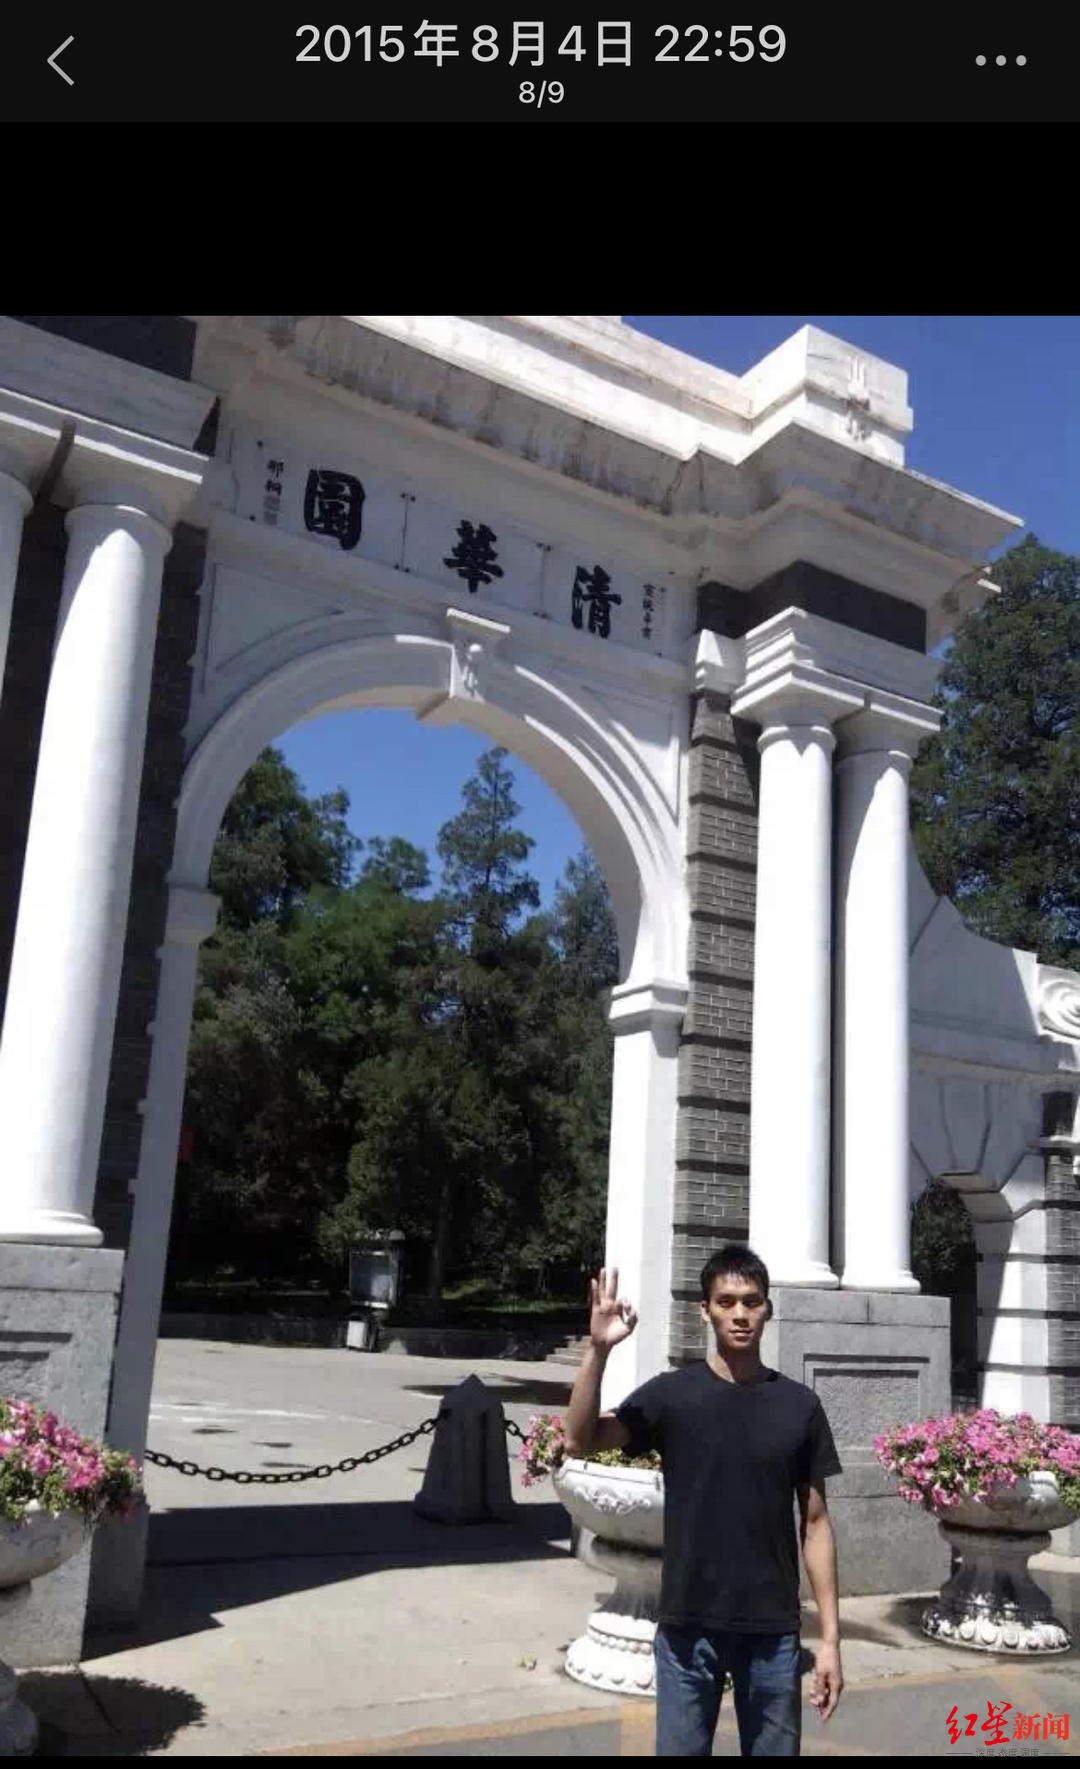 ▲唐尚珺在朋友圈发布自己在清华门口的照片